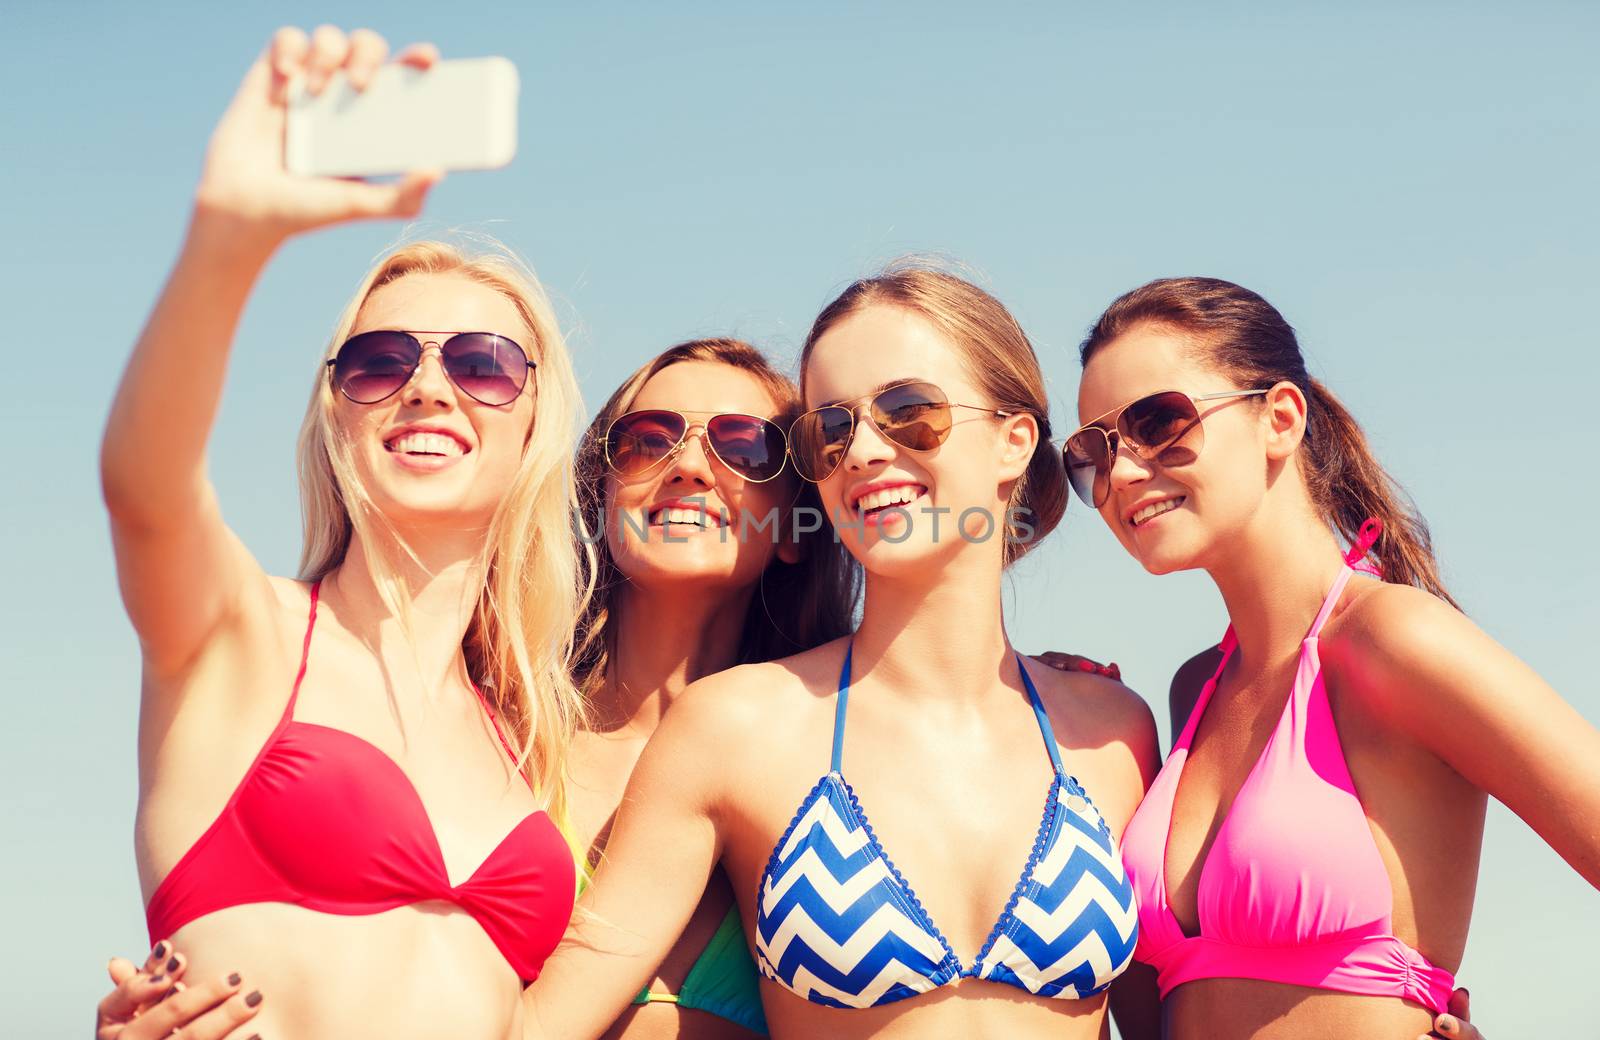 group of smiling women making selfie on beach by dolgachov